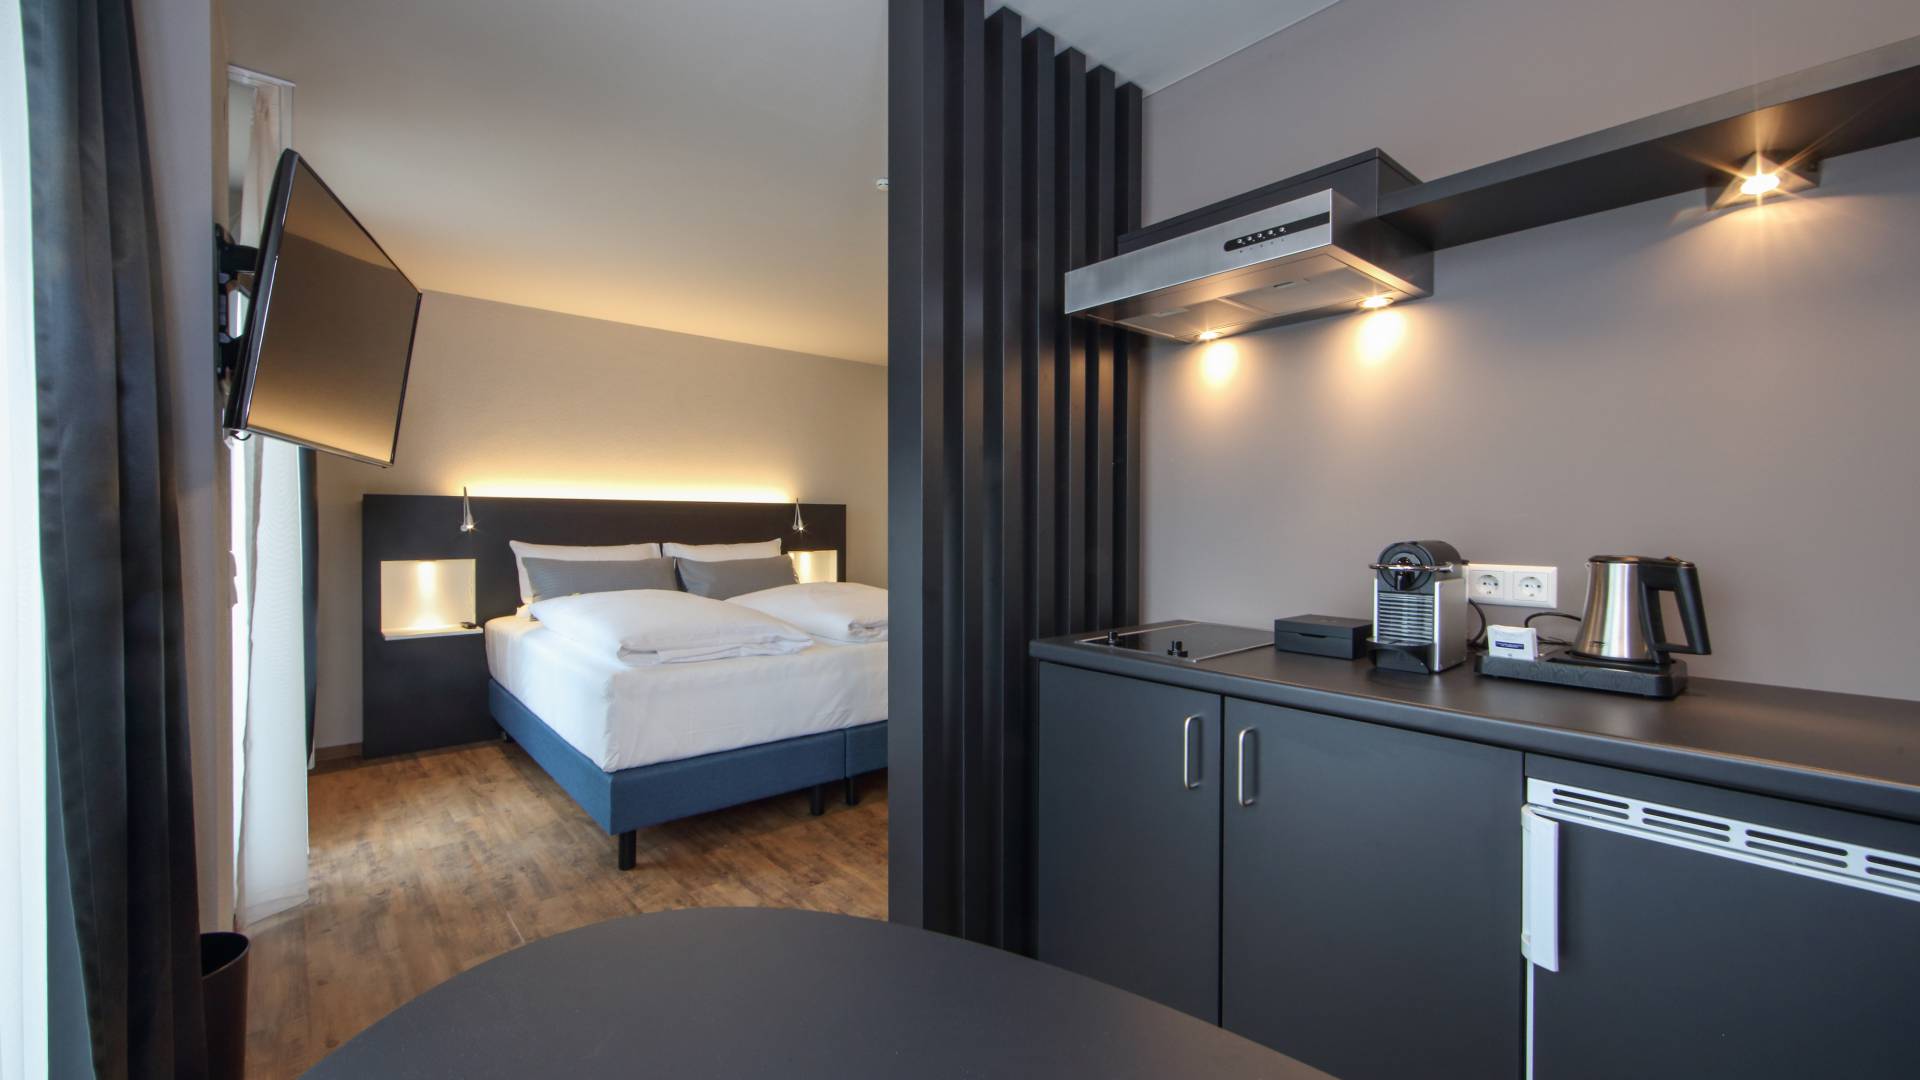 Küchenzeile und Bett im Doppelzimmer im im Estilo Design & Lifestyle Hotel Aalen